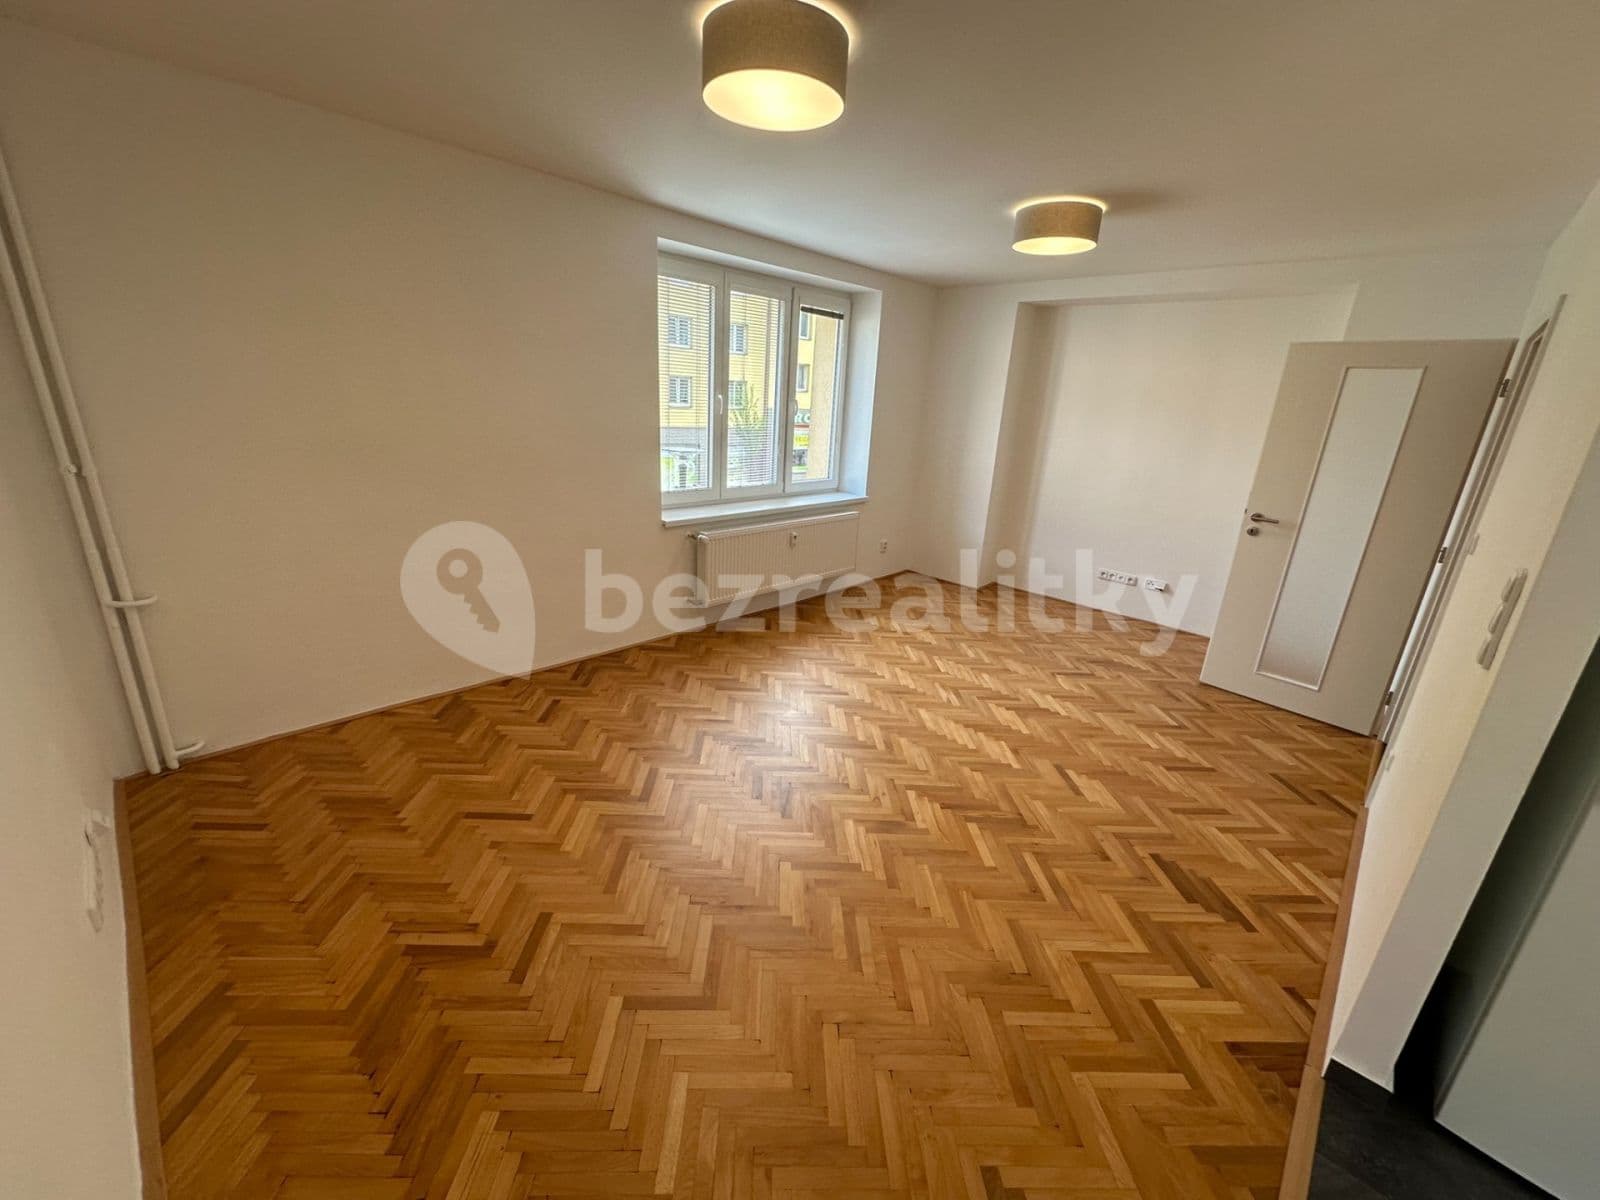 1 bedroom with open-plan kitchen flat to rent, 56 m², třída Osvobození, Příbram, Středočeský Region